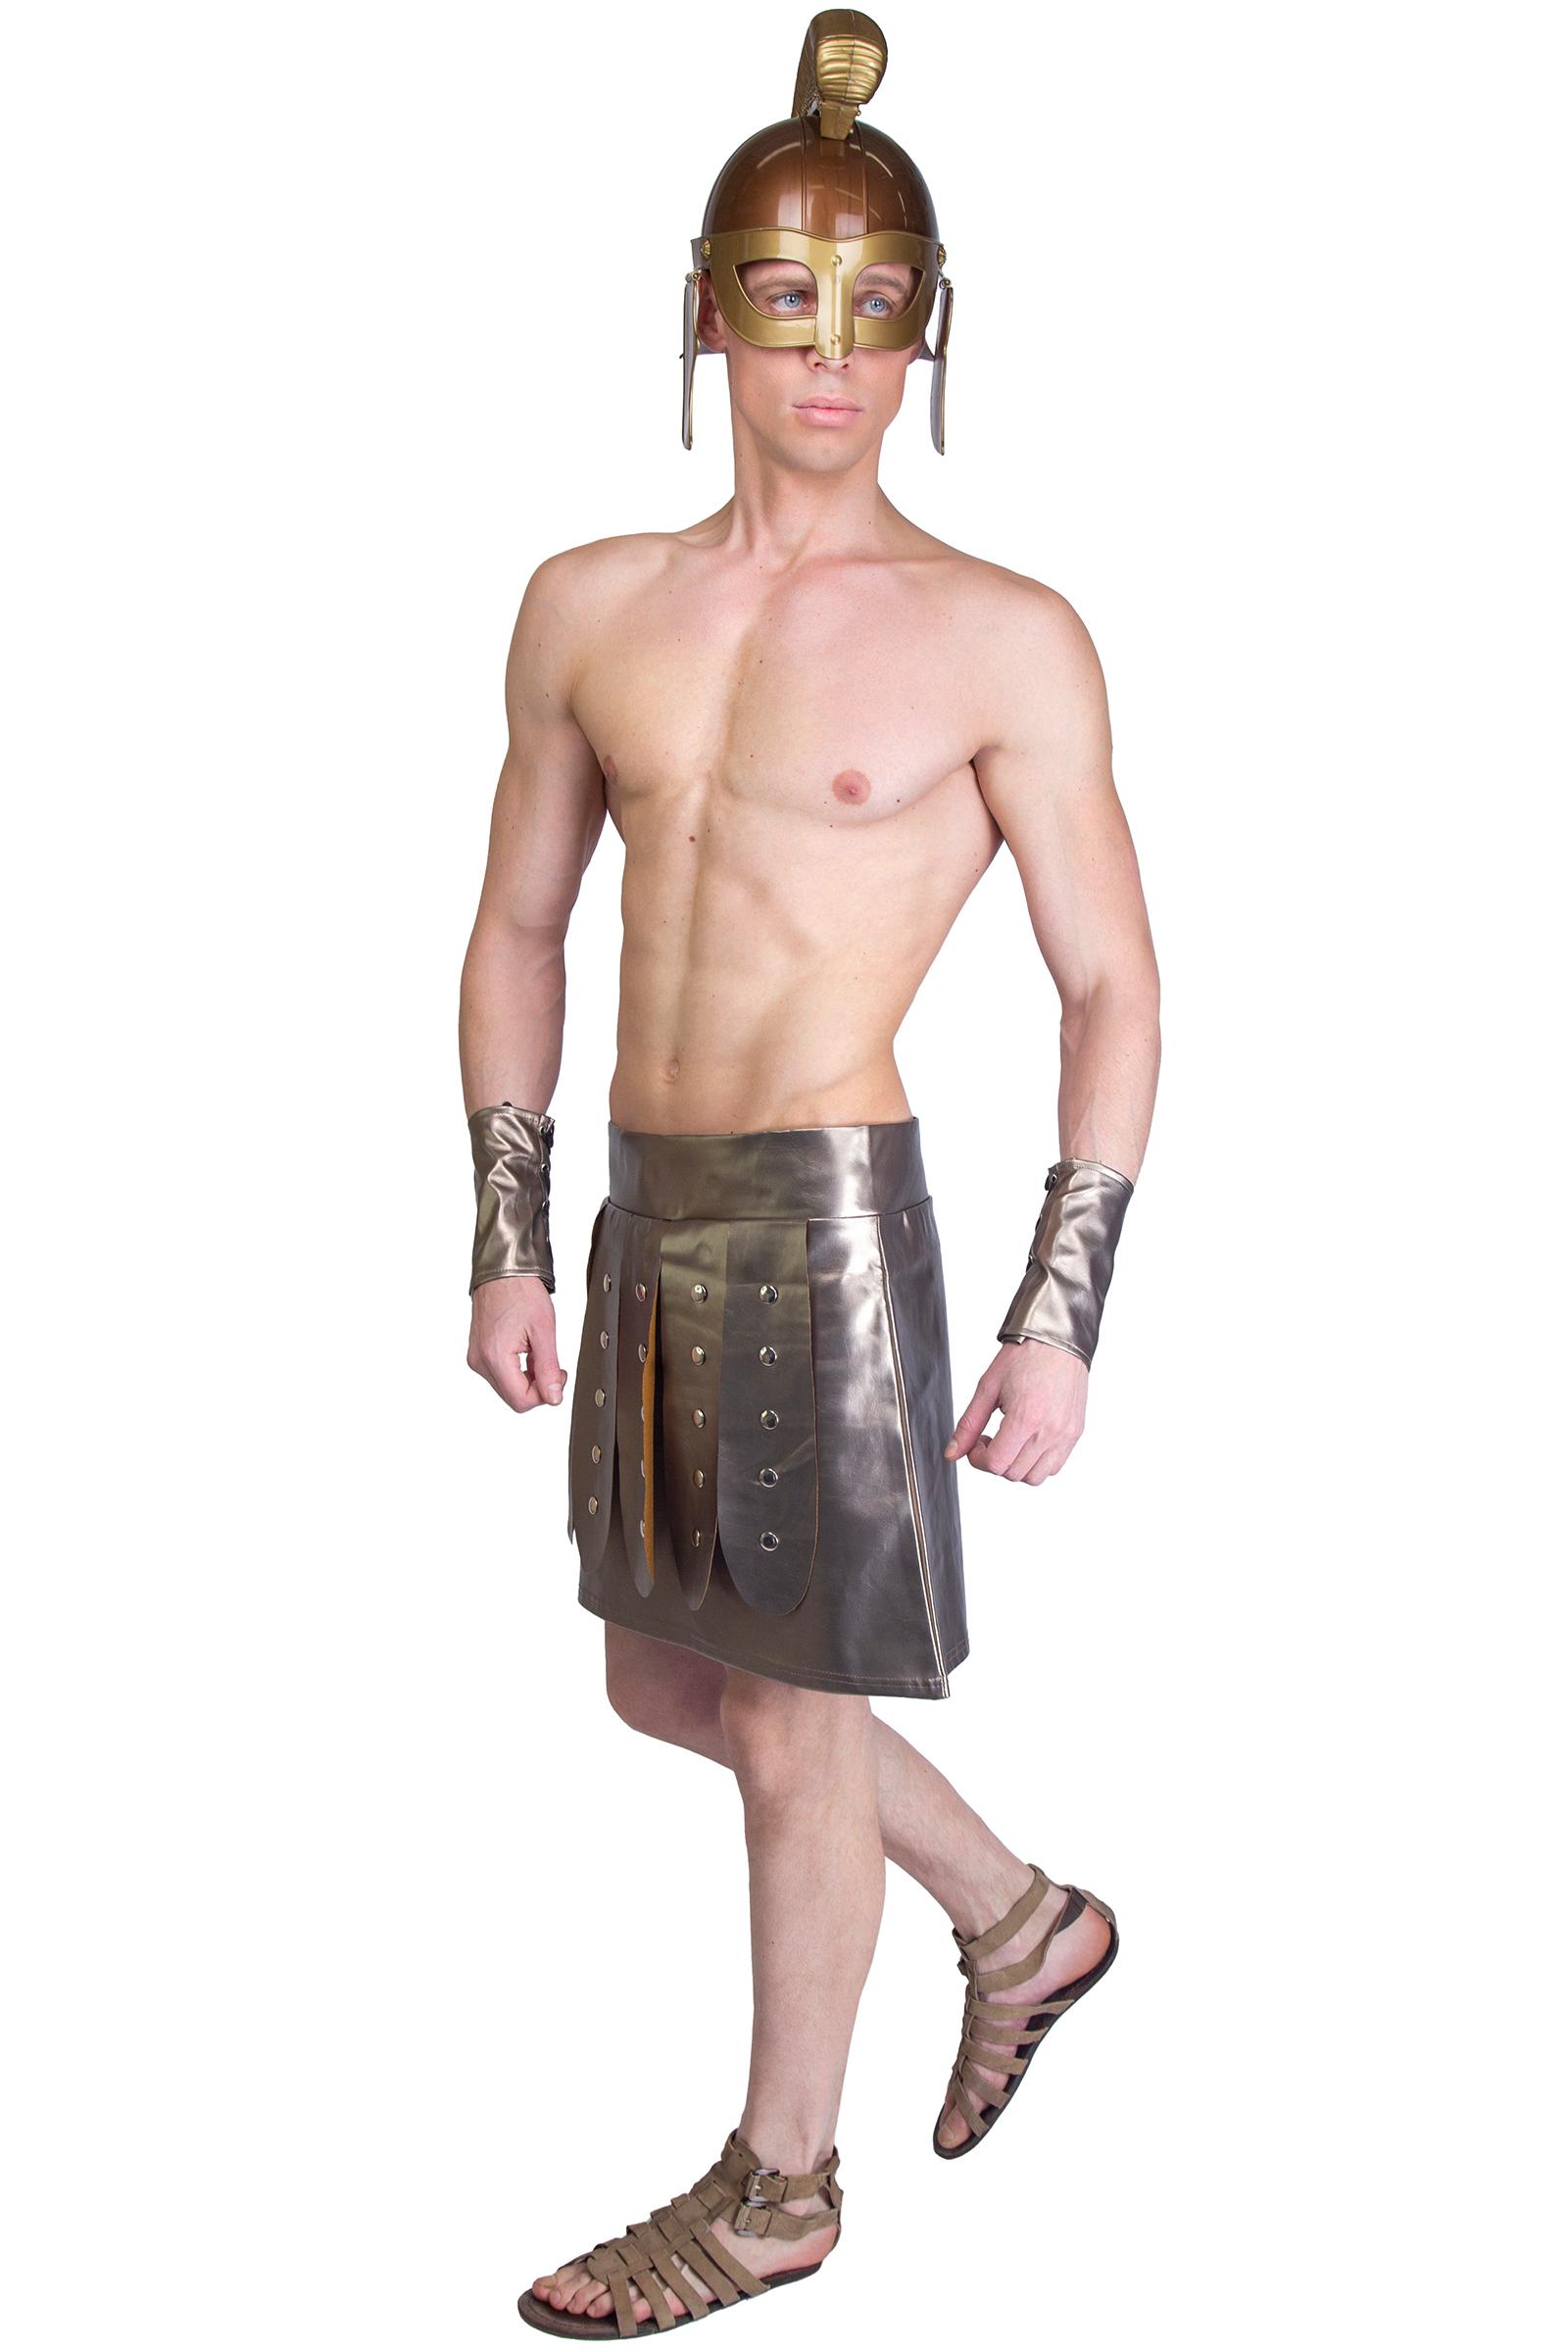 Мужские гладиаторы. Костюм гладиатора мужской. Одежда гладиаторов в древнем Риме. Костюм Посейдона.